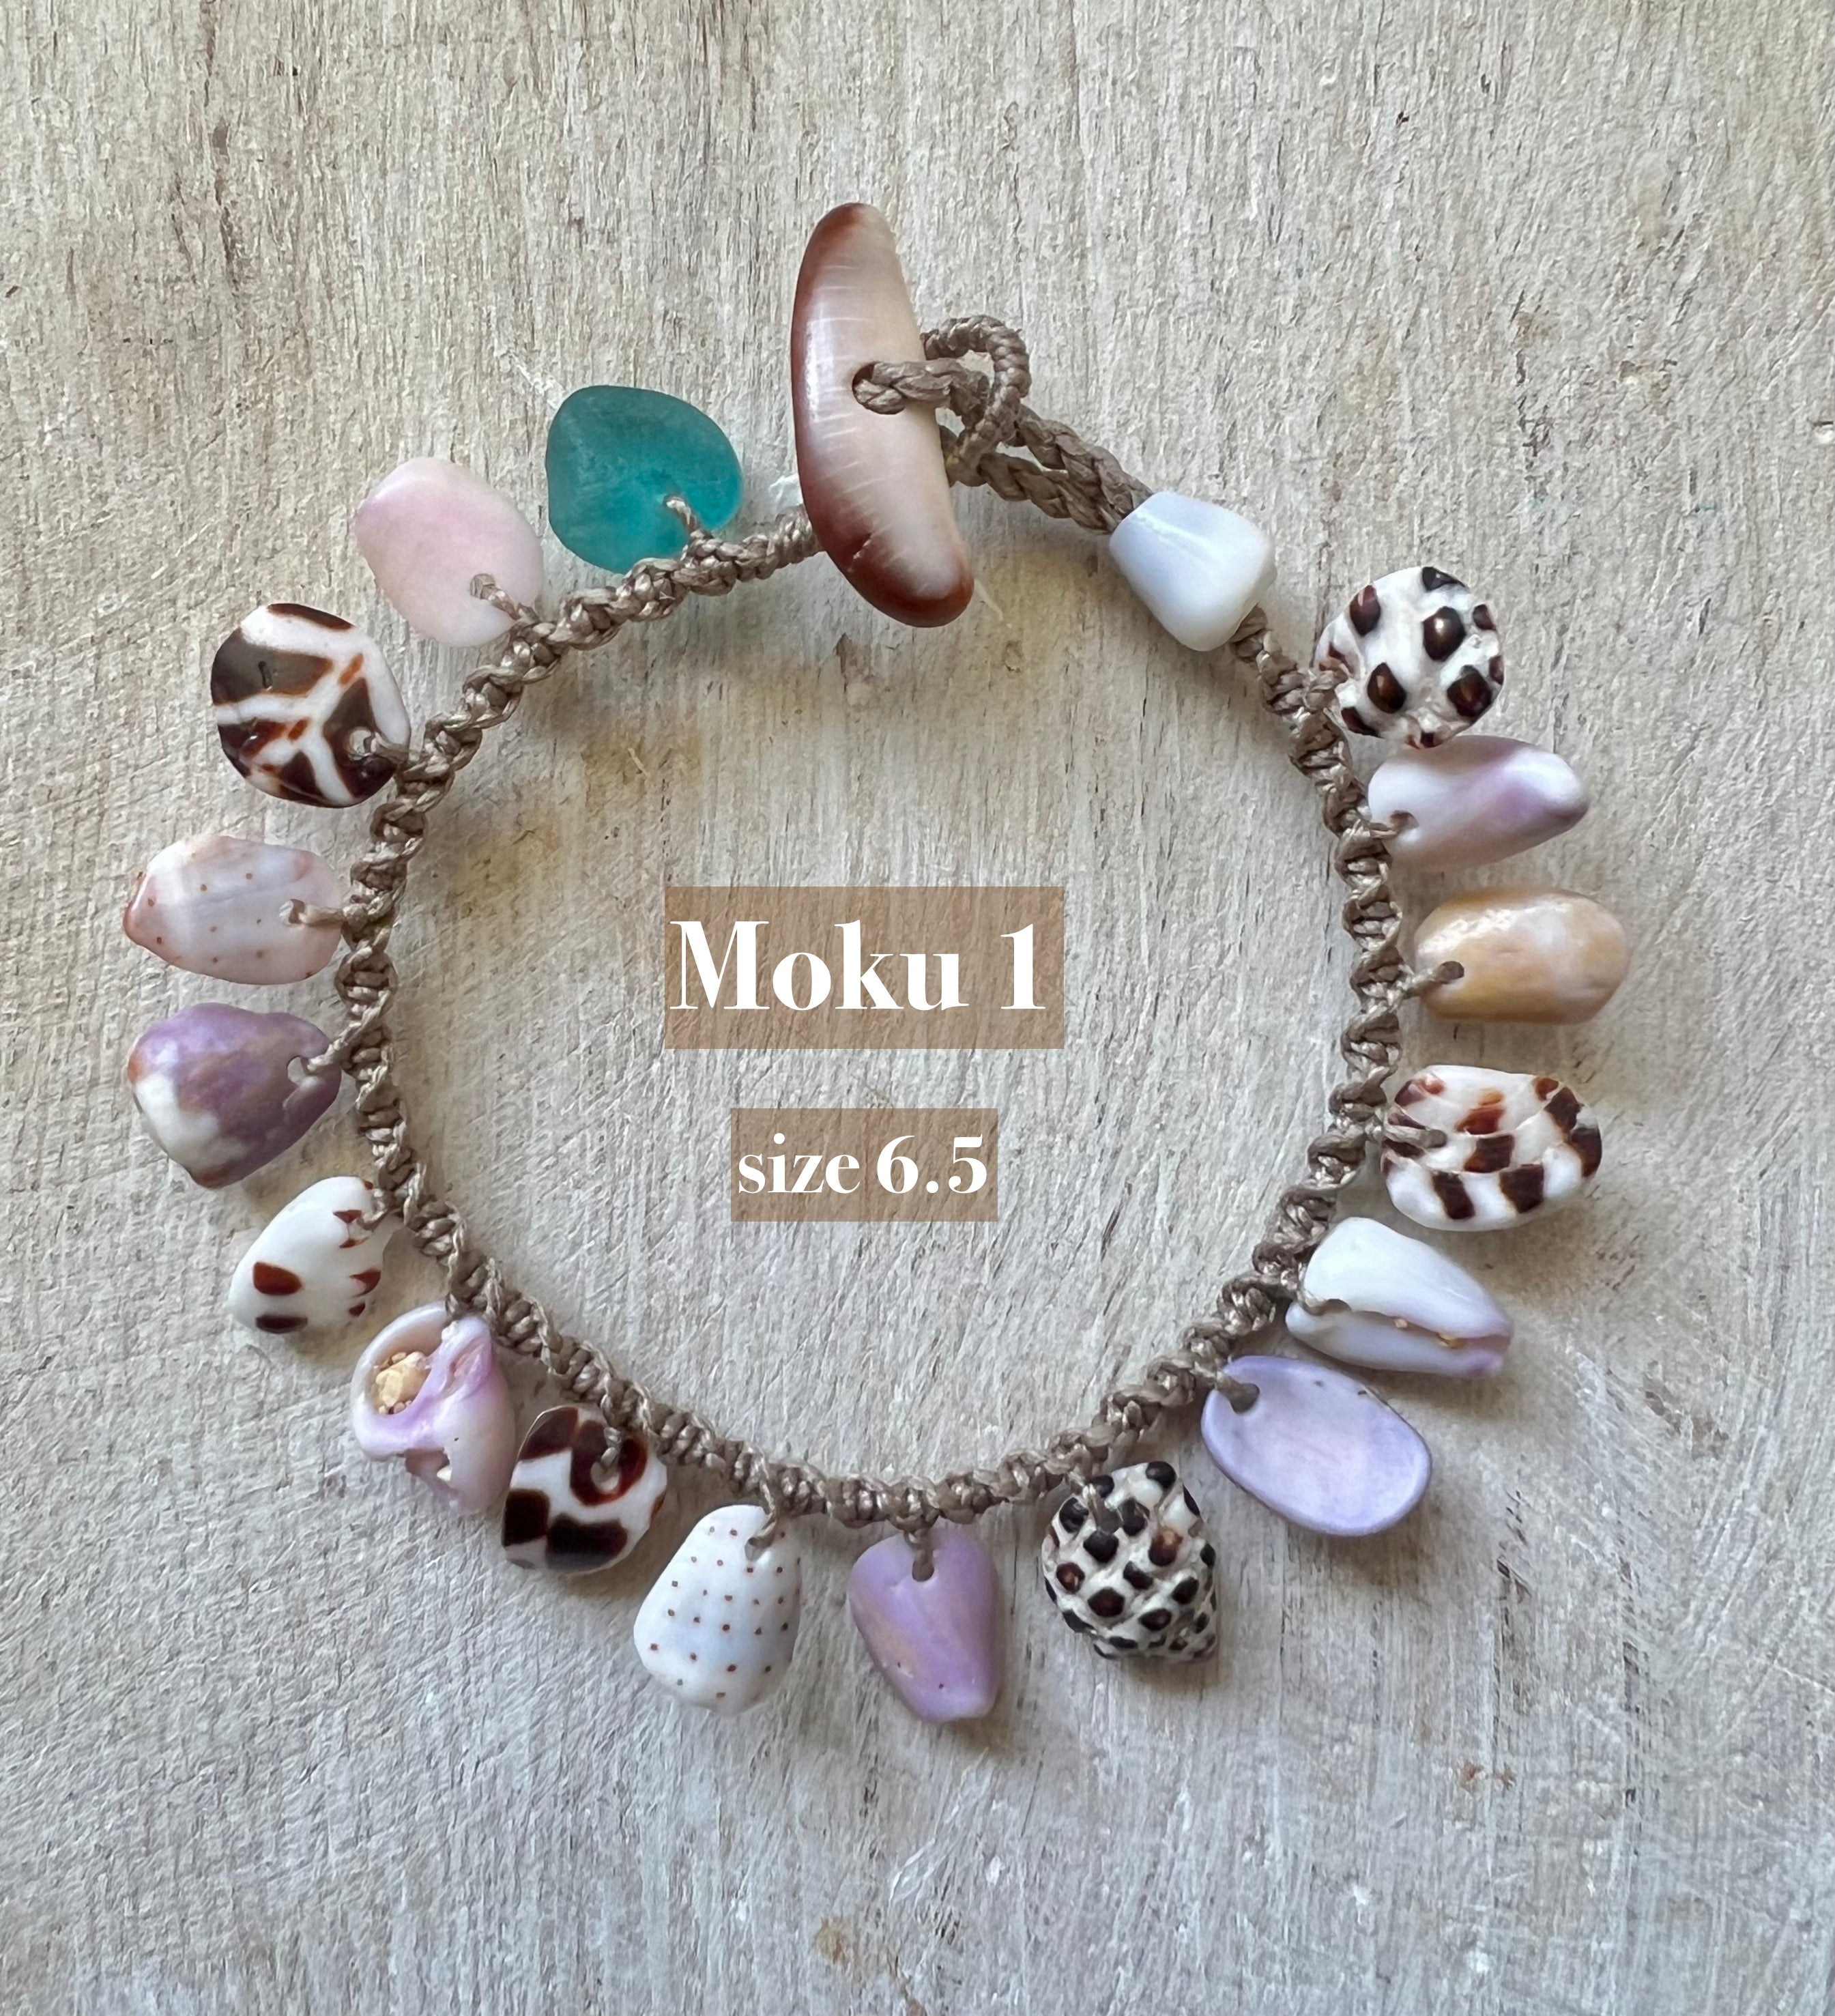 Moku Bracelet ~ Size 6.5